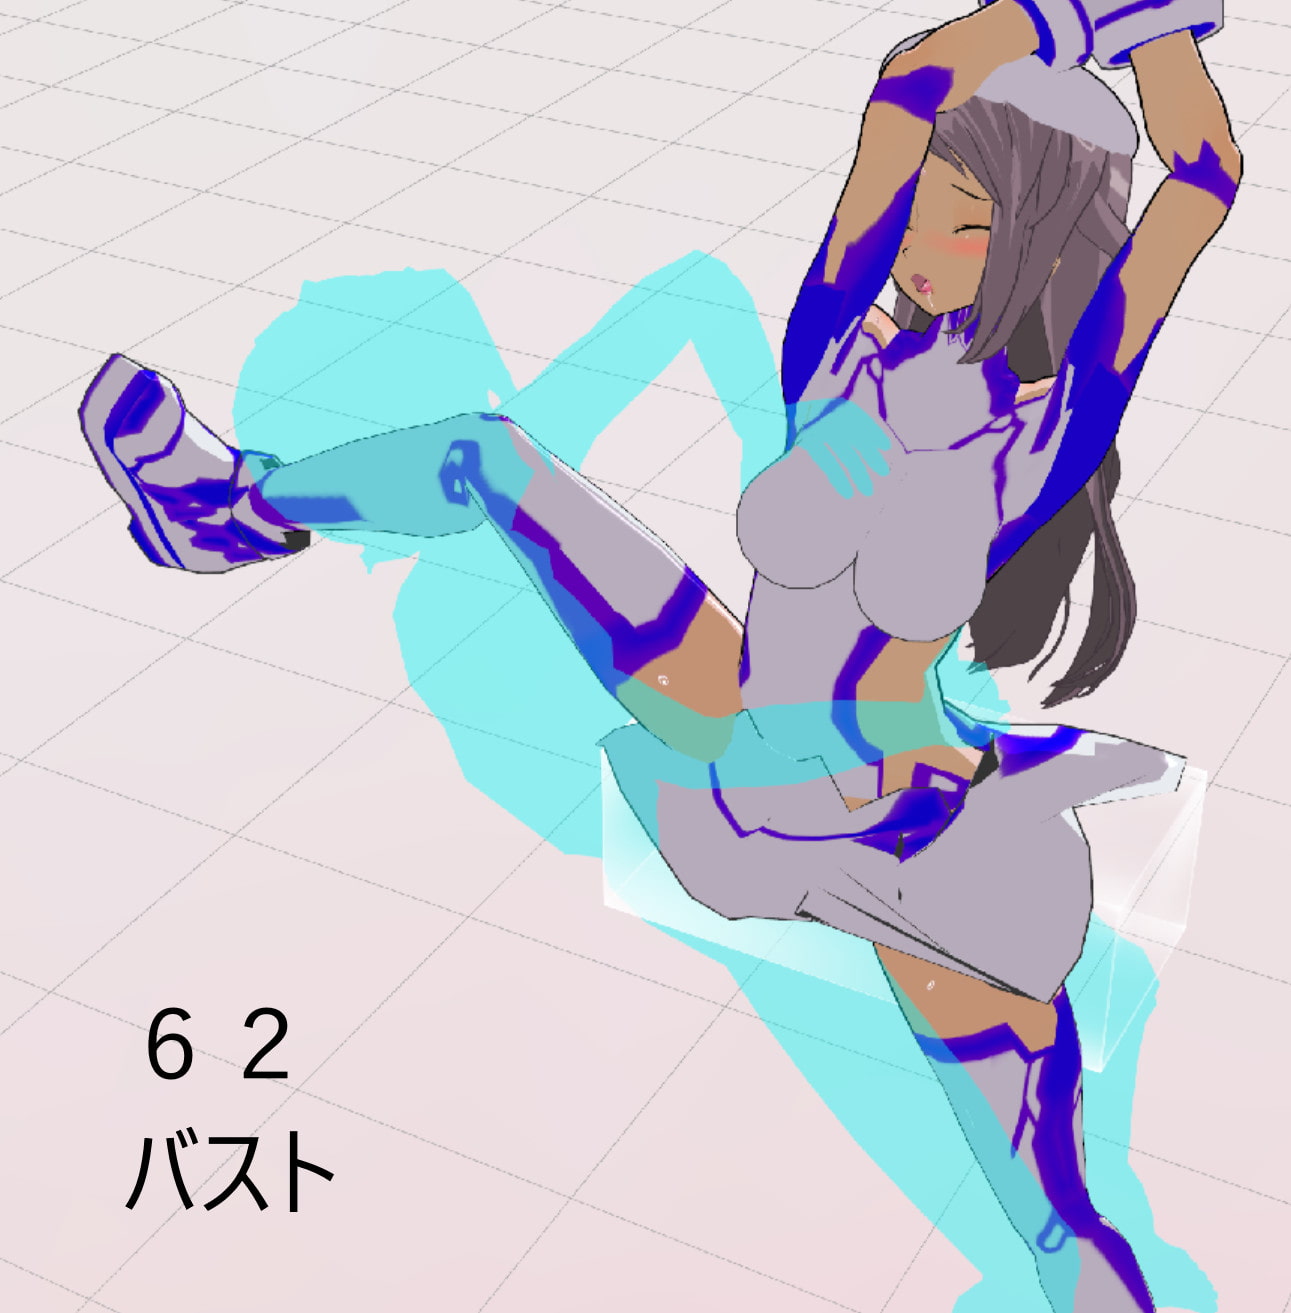 3Dカスタム少女追加モーション立位smallpack46